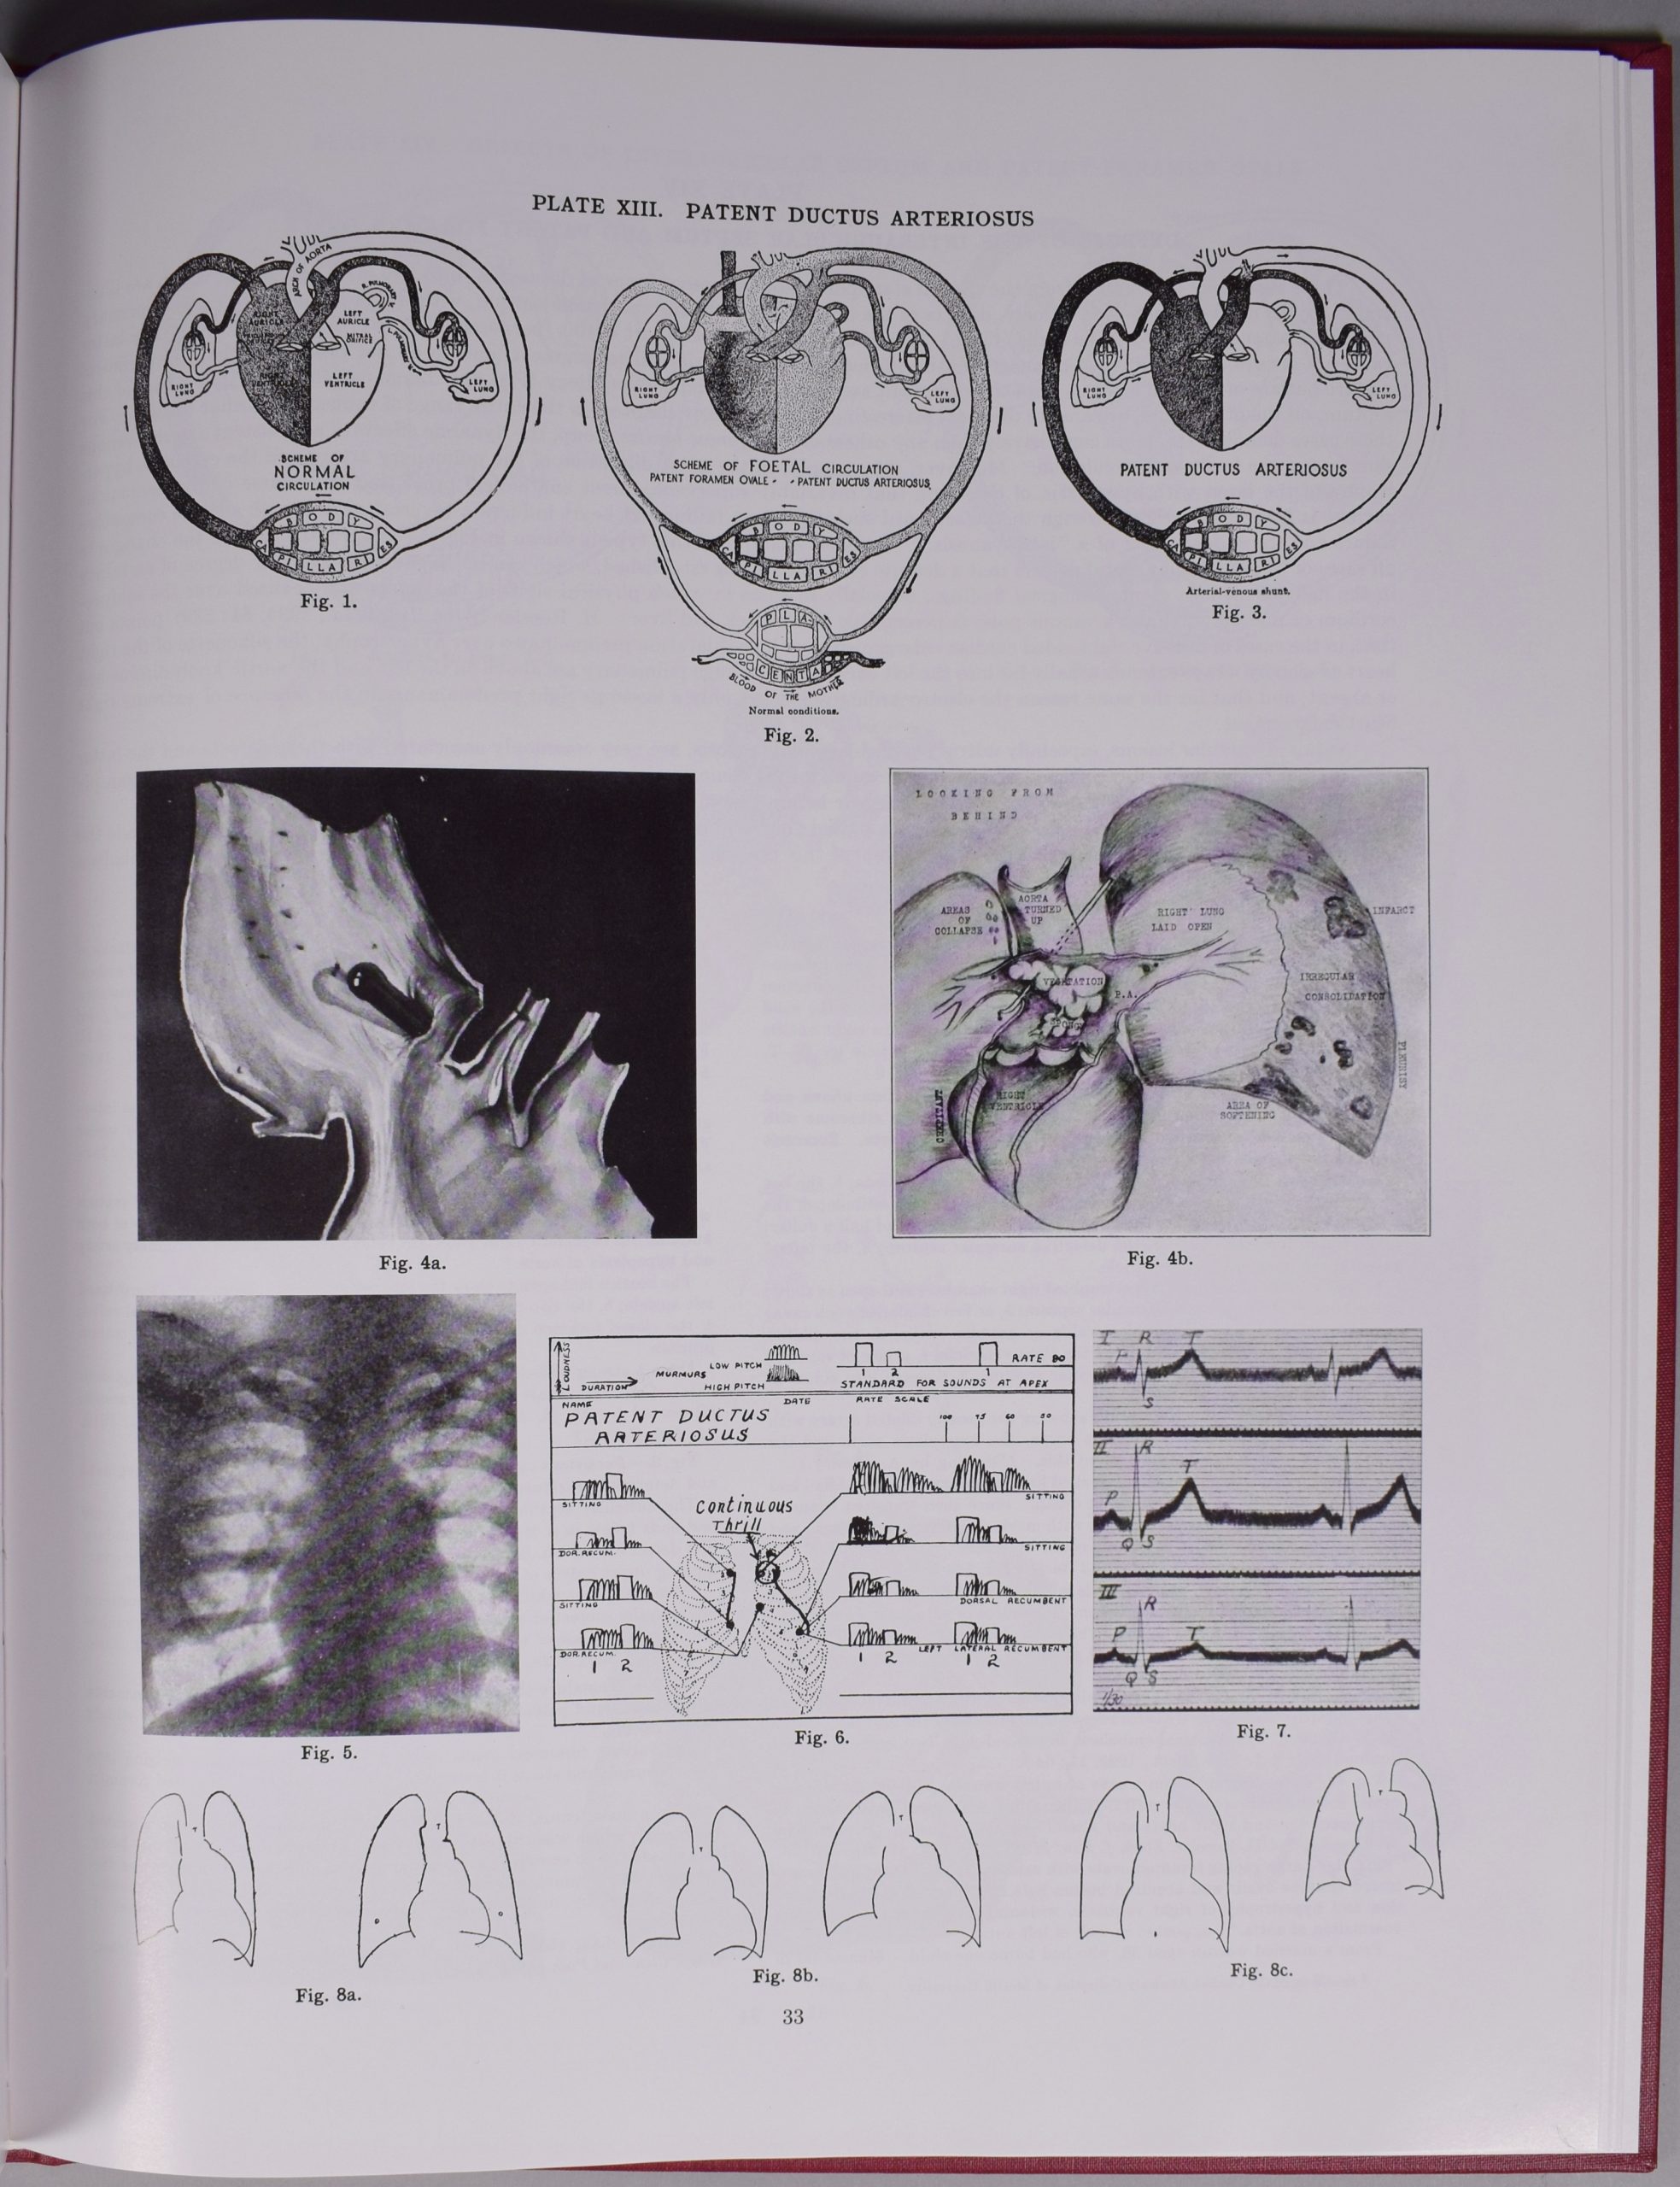 Photographie de la page 33 de l’Atlas of Congenital Cardiac Disease de Maude Abbott, noir et blanc. En haut de la page, l’inscription « Plate XIII. Patent Ductus Arteriosus » et on y voit 11 figures représentant des artères cardiaques en dessins et images.